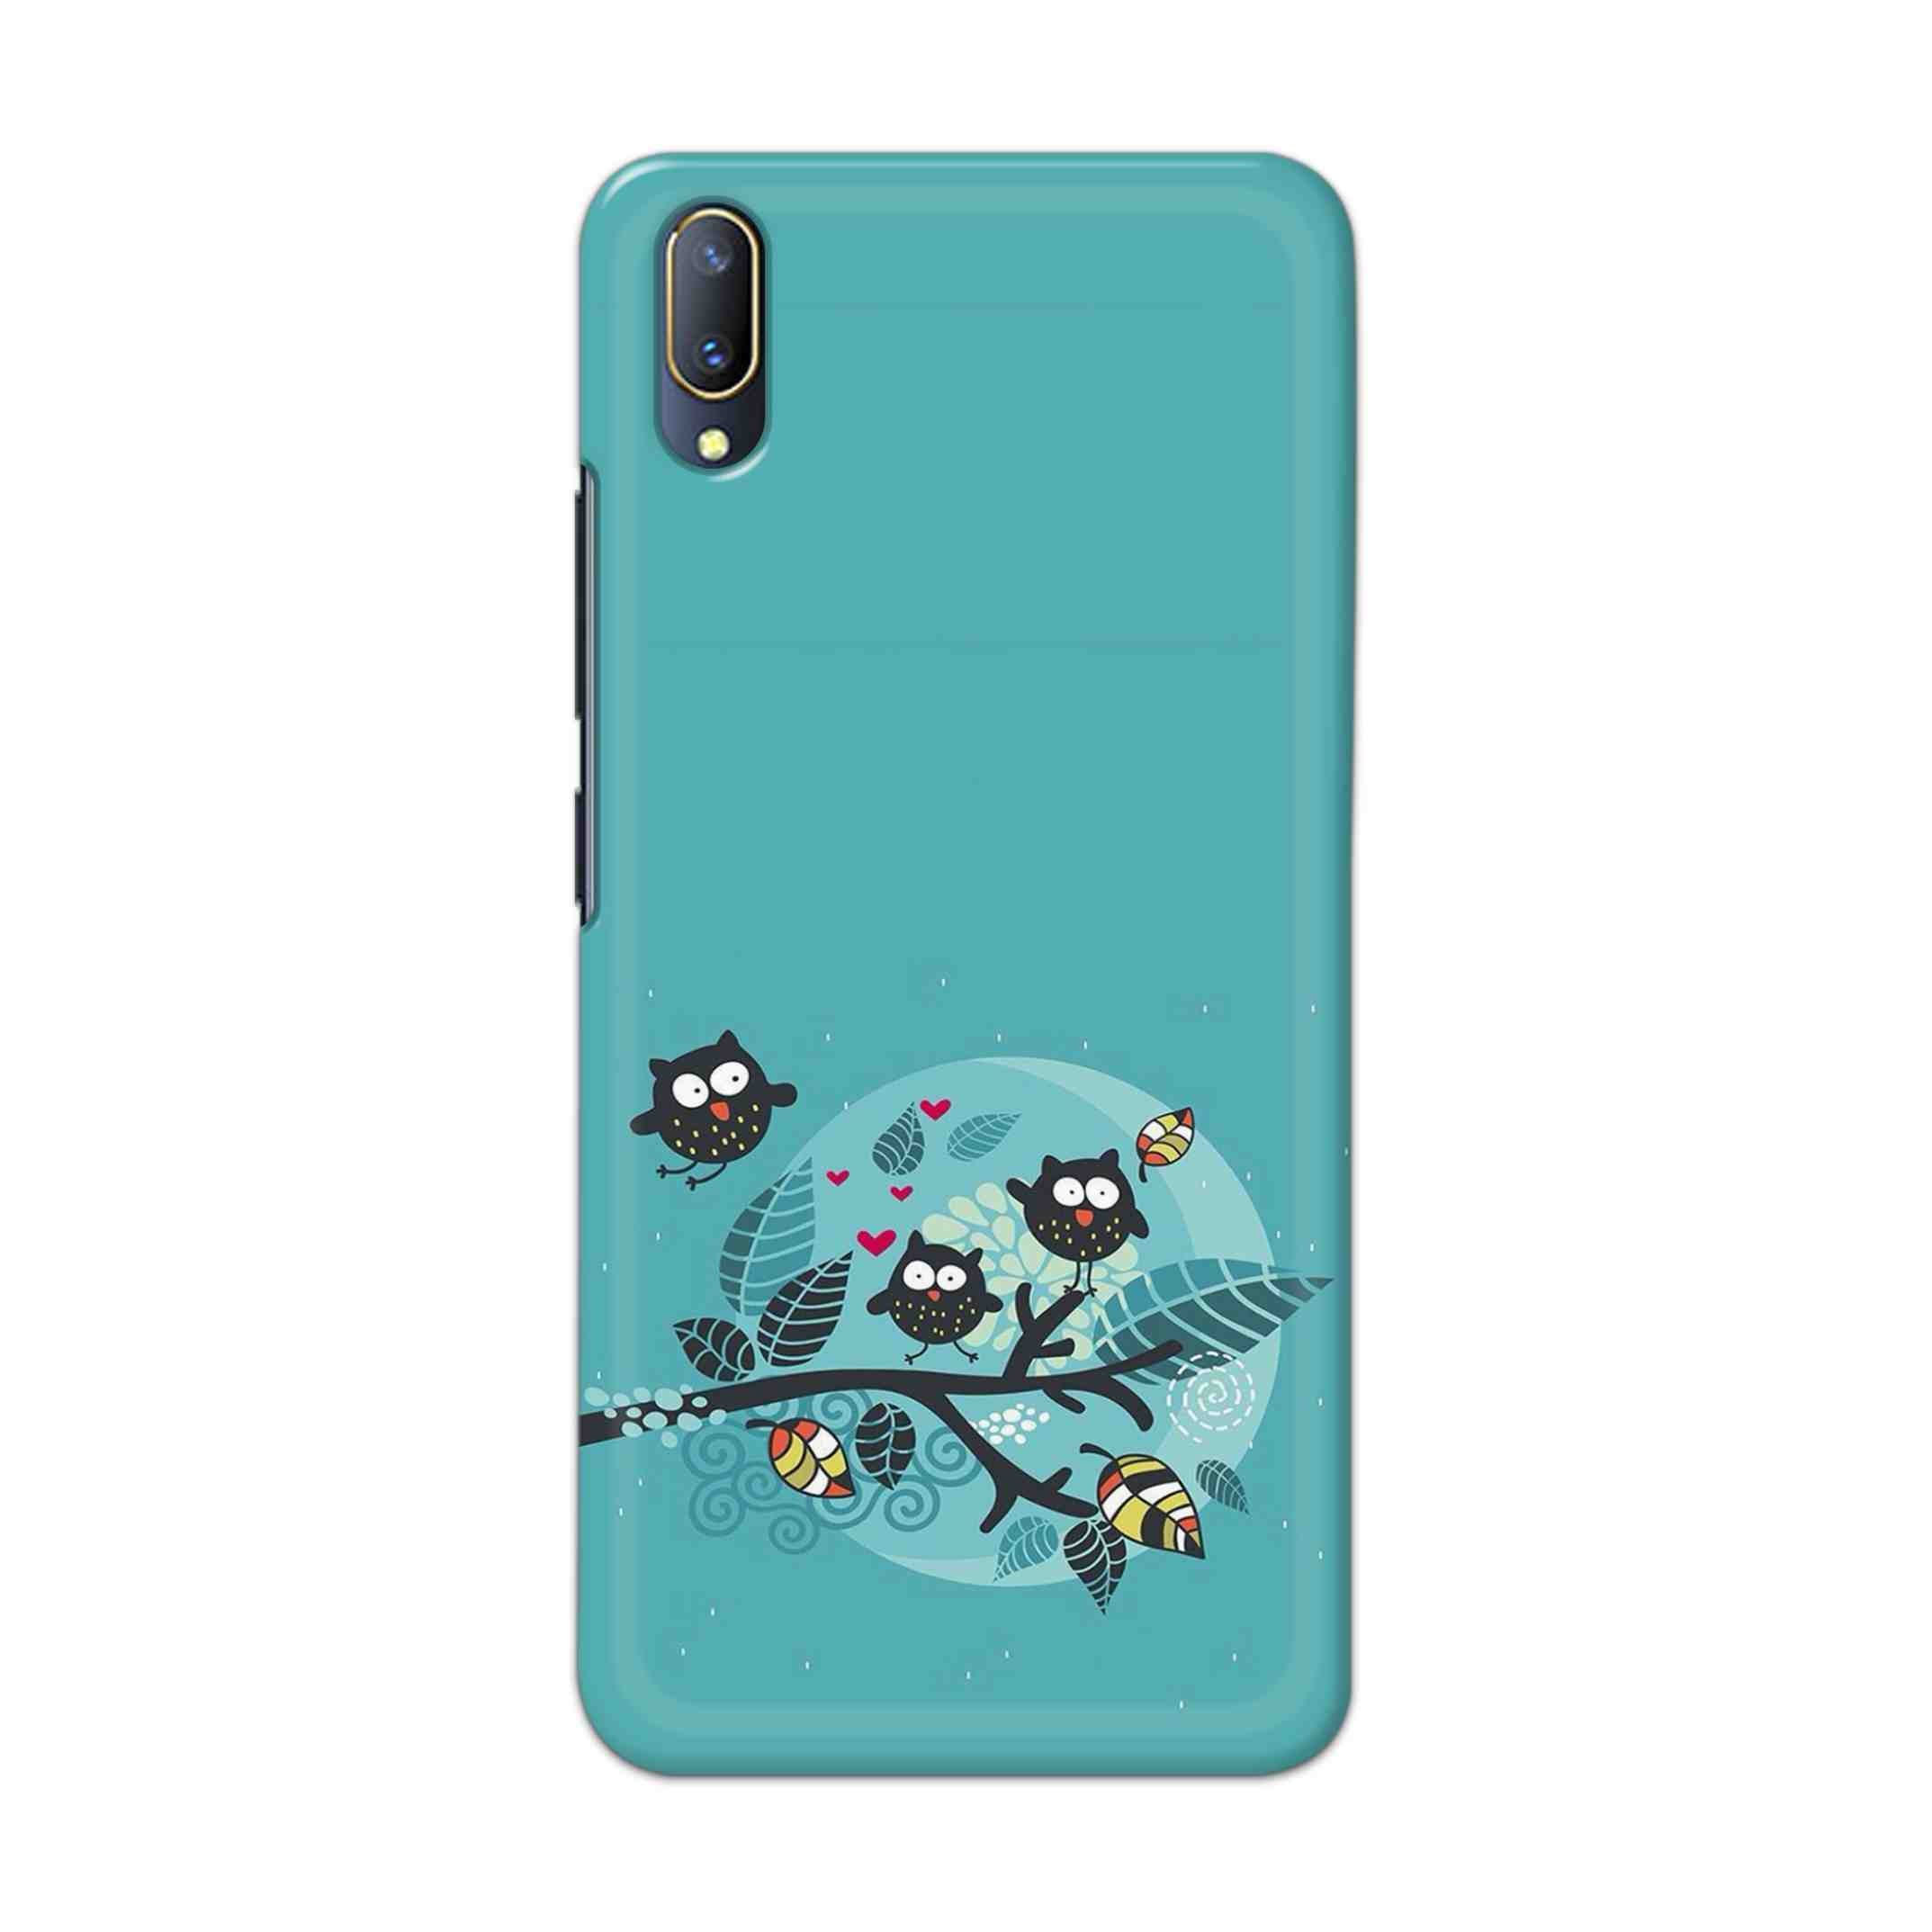 Buy Owl Hard Back Mobile Phone Case Cover For V11 PRO Online